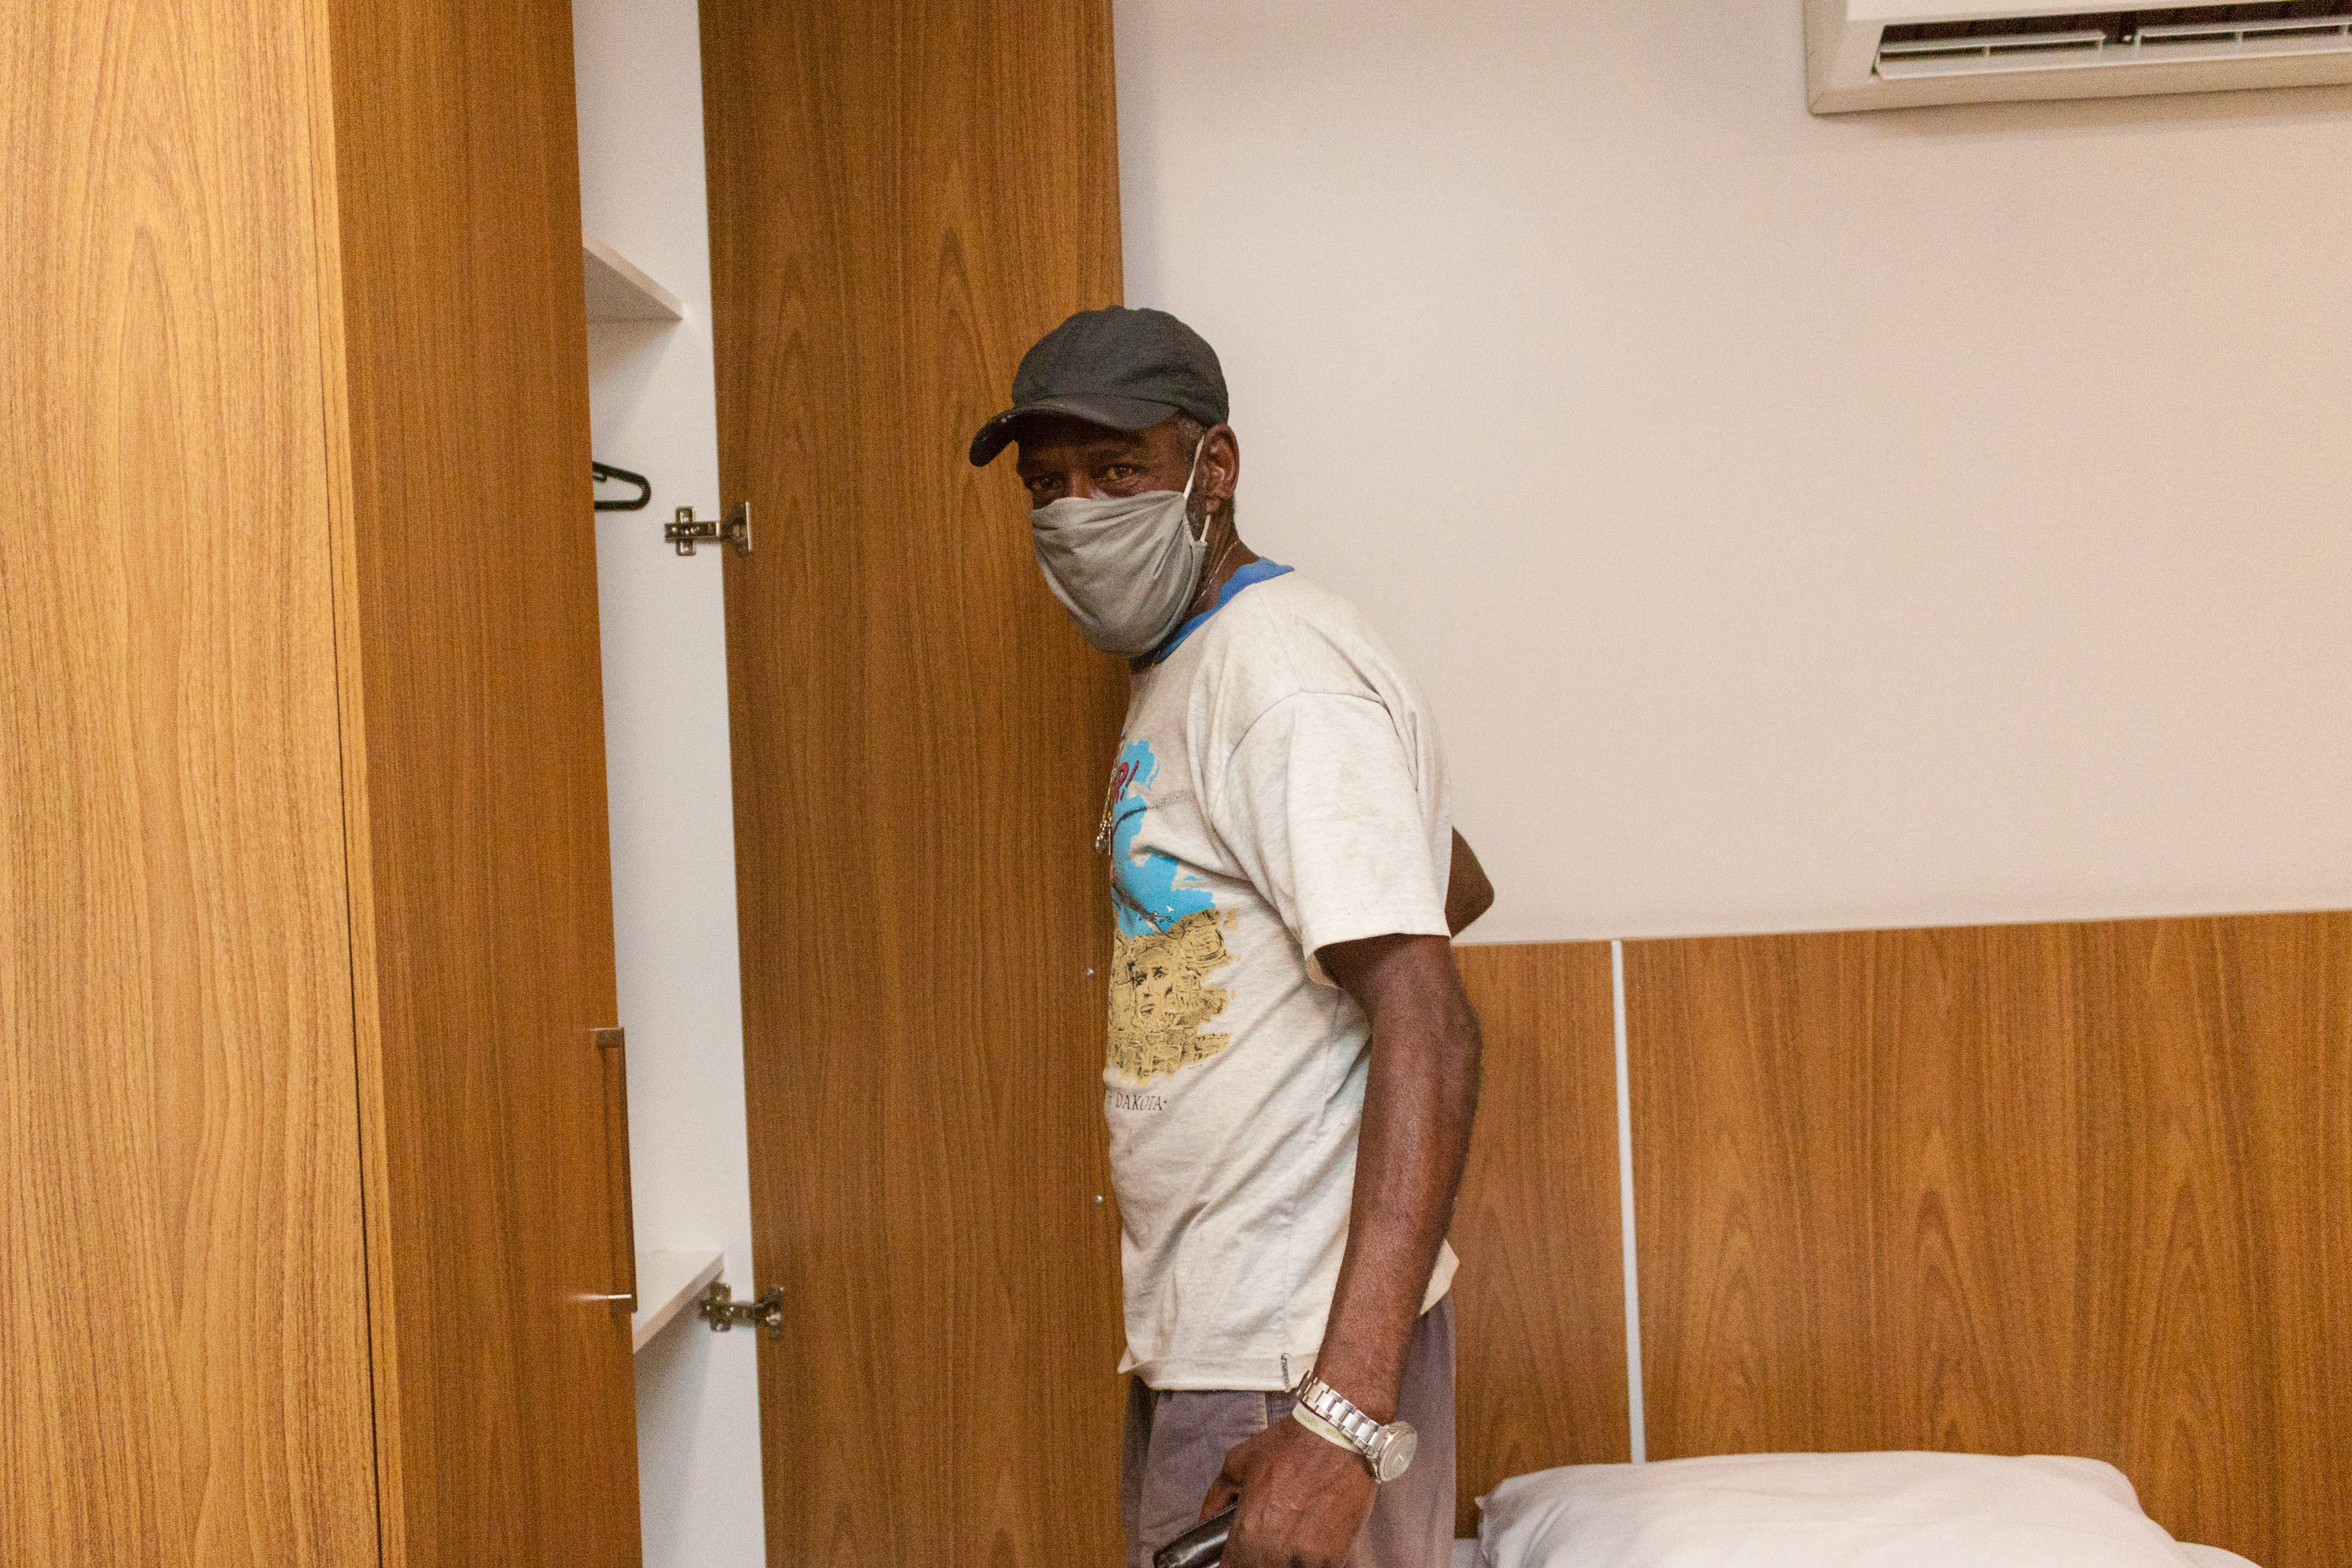 Um idoso de abre a porta do armário para guardar seus pertences. Ele está usando uma camiseta estampada, boné em tom escuro e máscara de proteção.